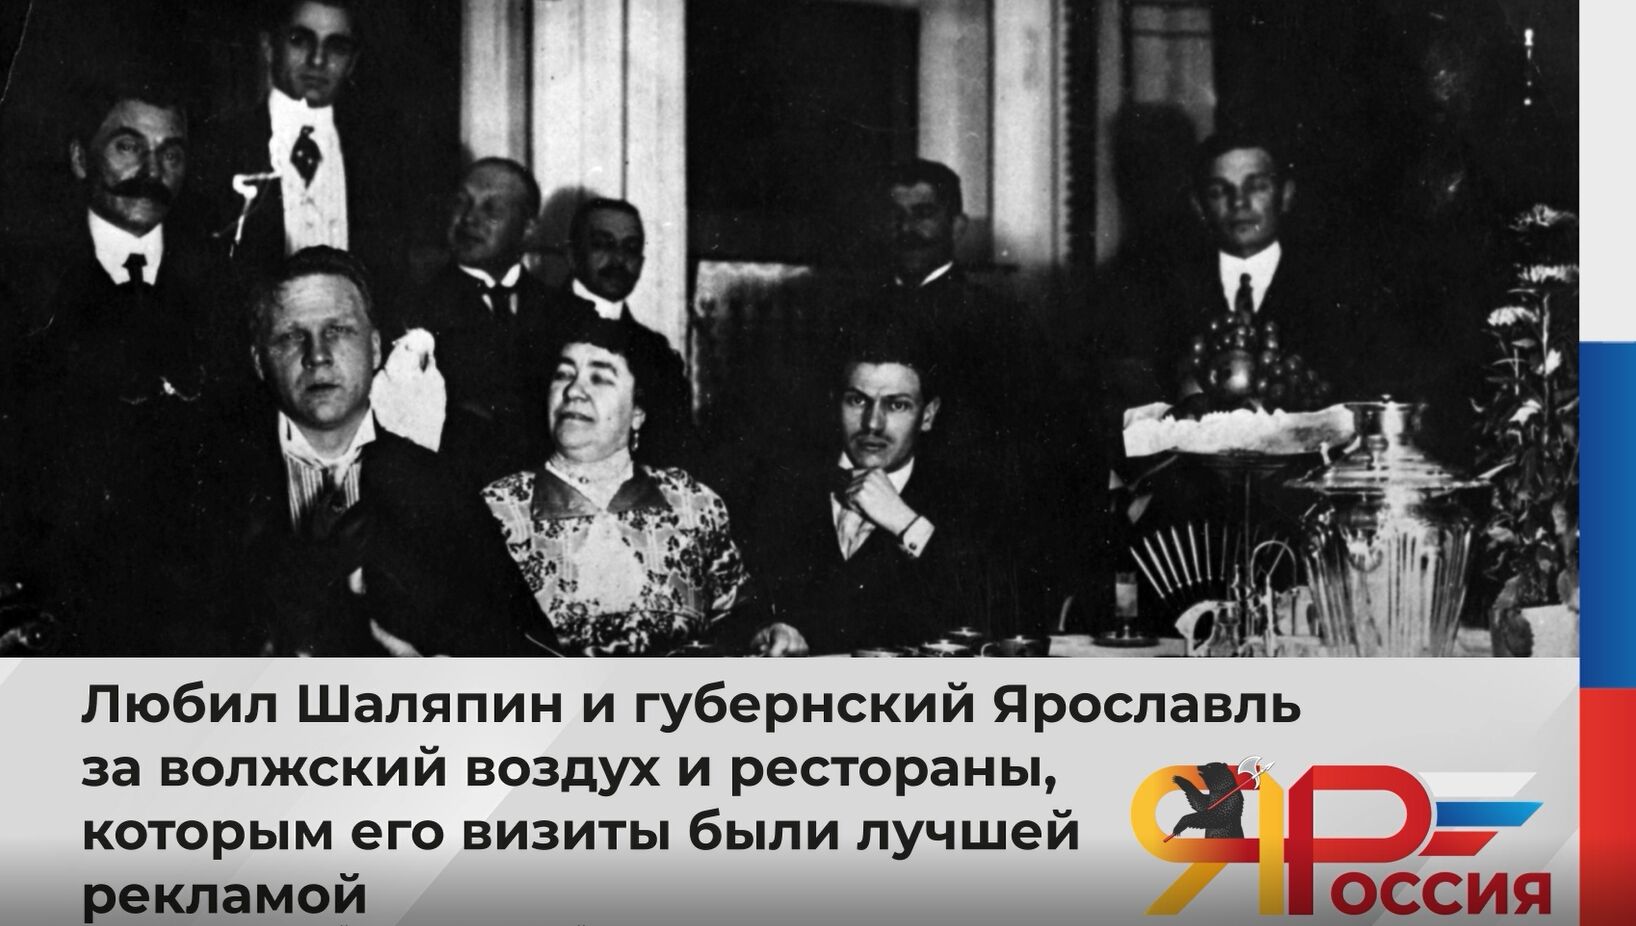 13 февраля мы отмечаем 150-летие со дня рождения великого русского певца Федора Шаляпина